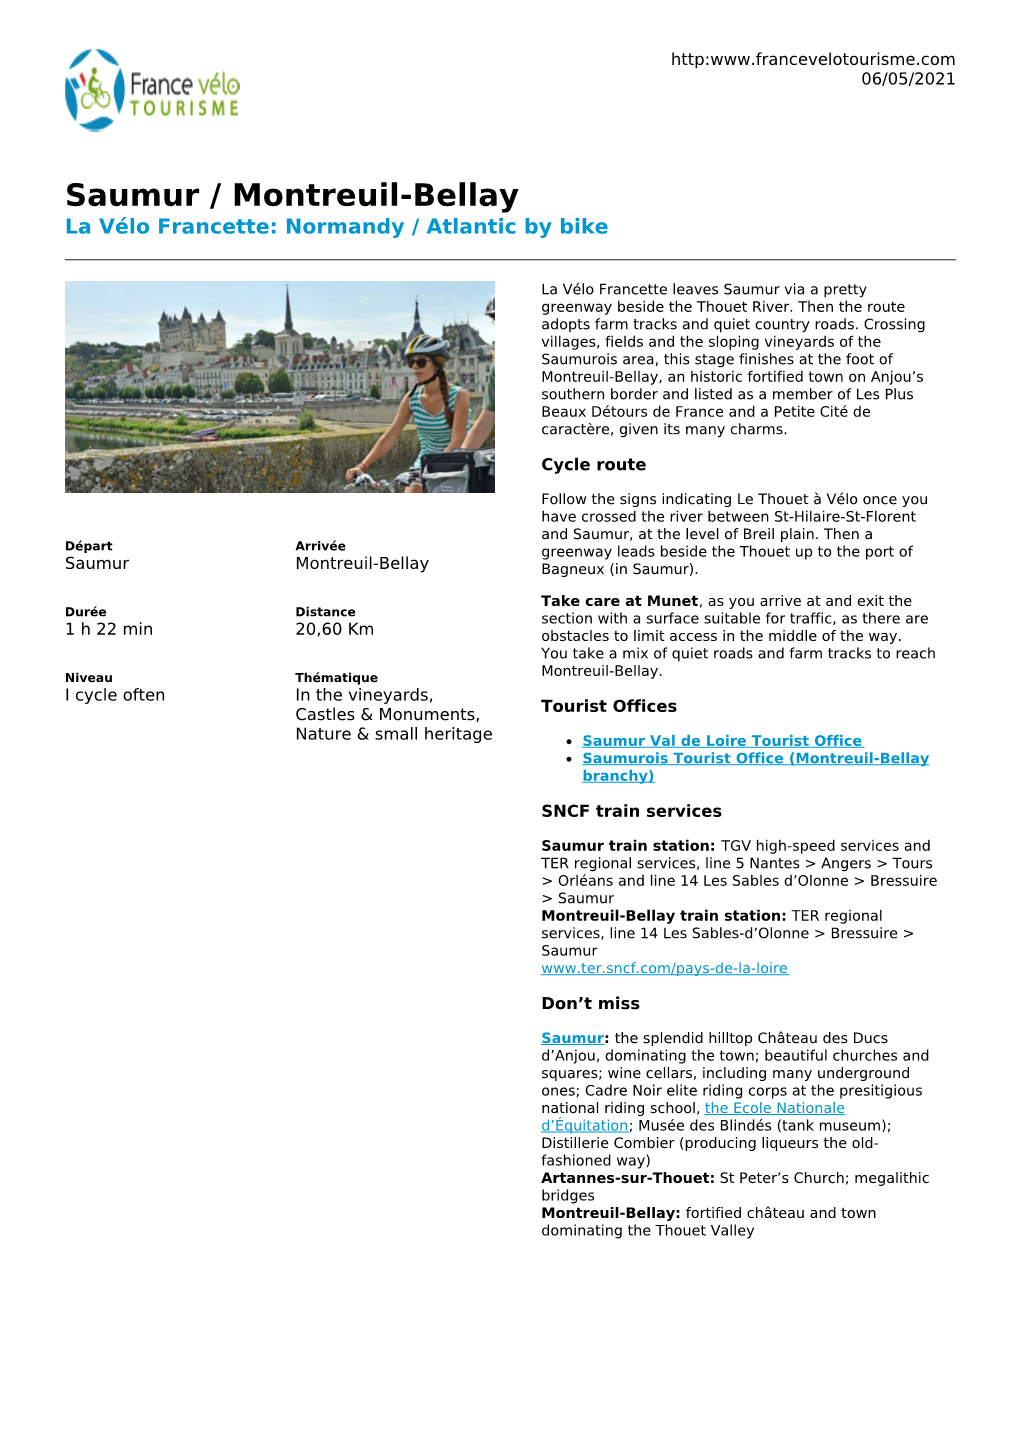 Saumur / Montreuil-Bellay La Vélo Francette: Normandy / Atlantic by Bike